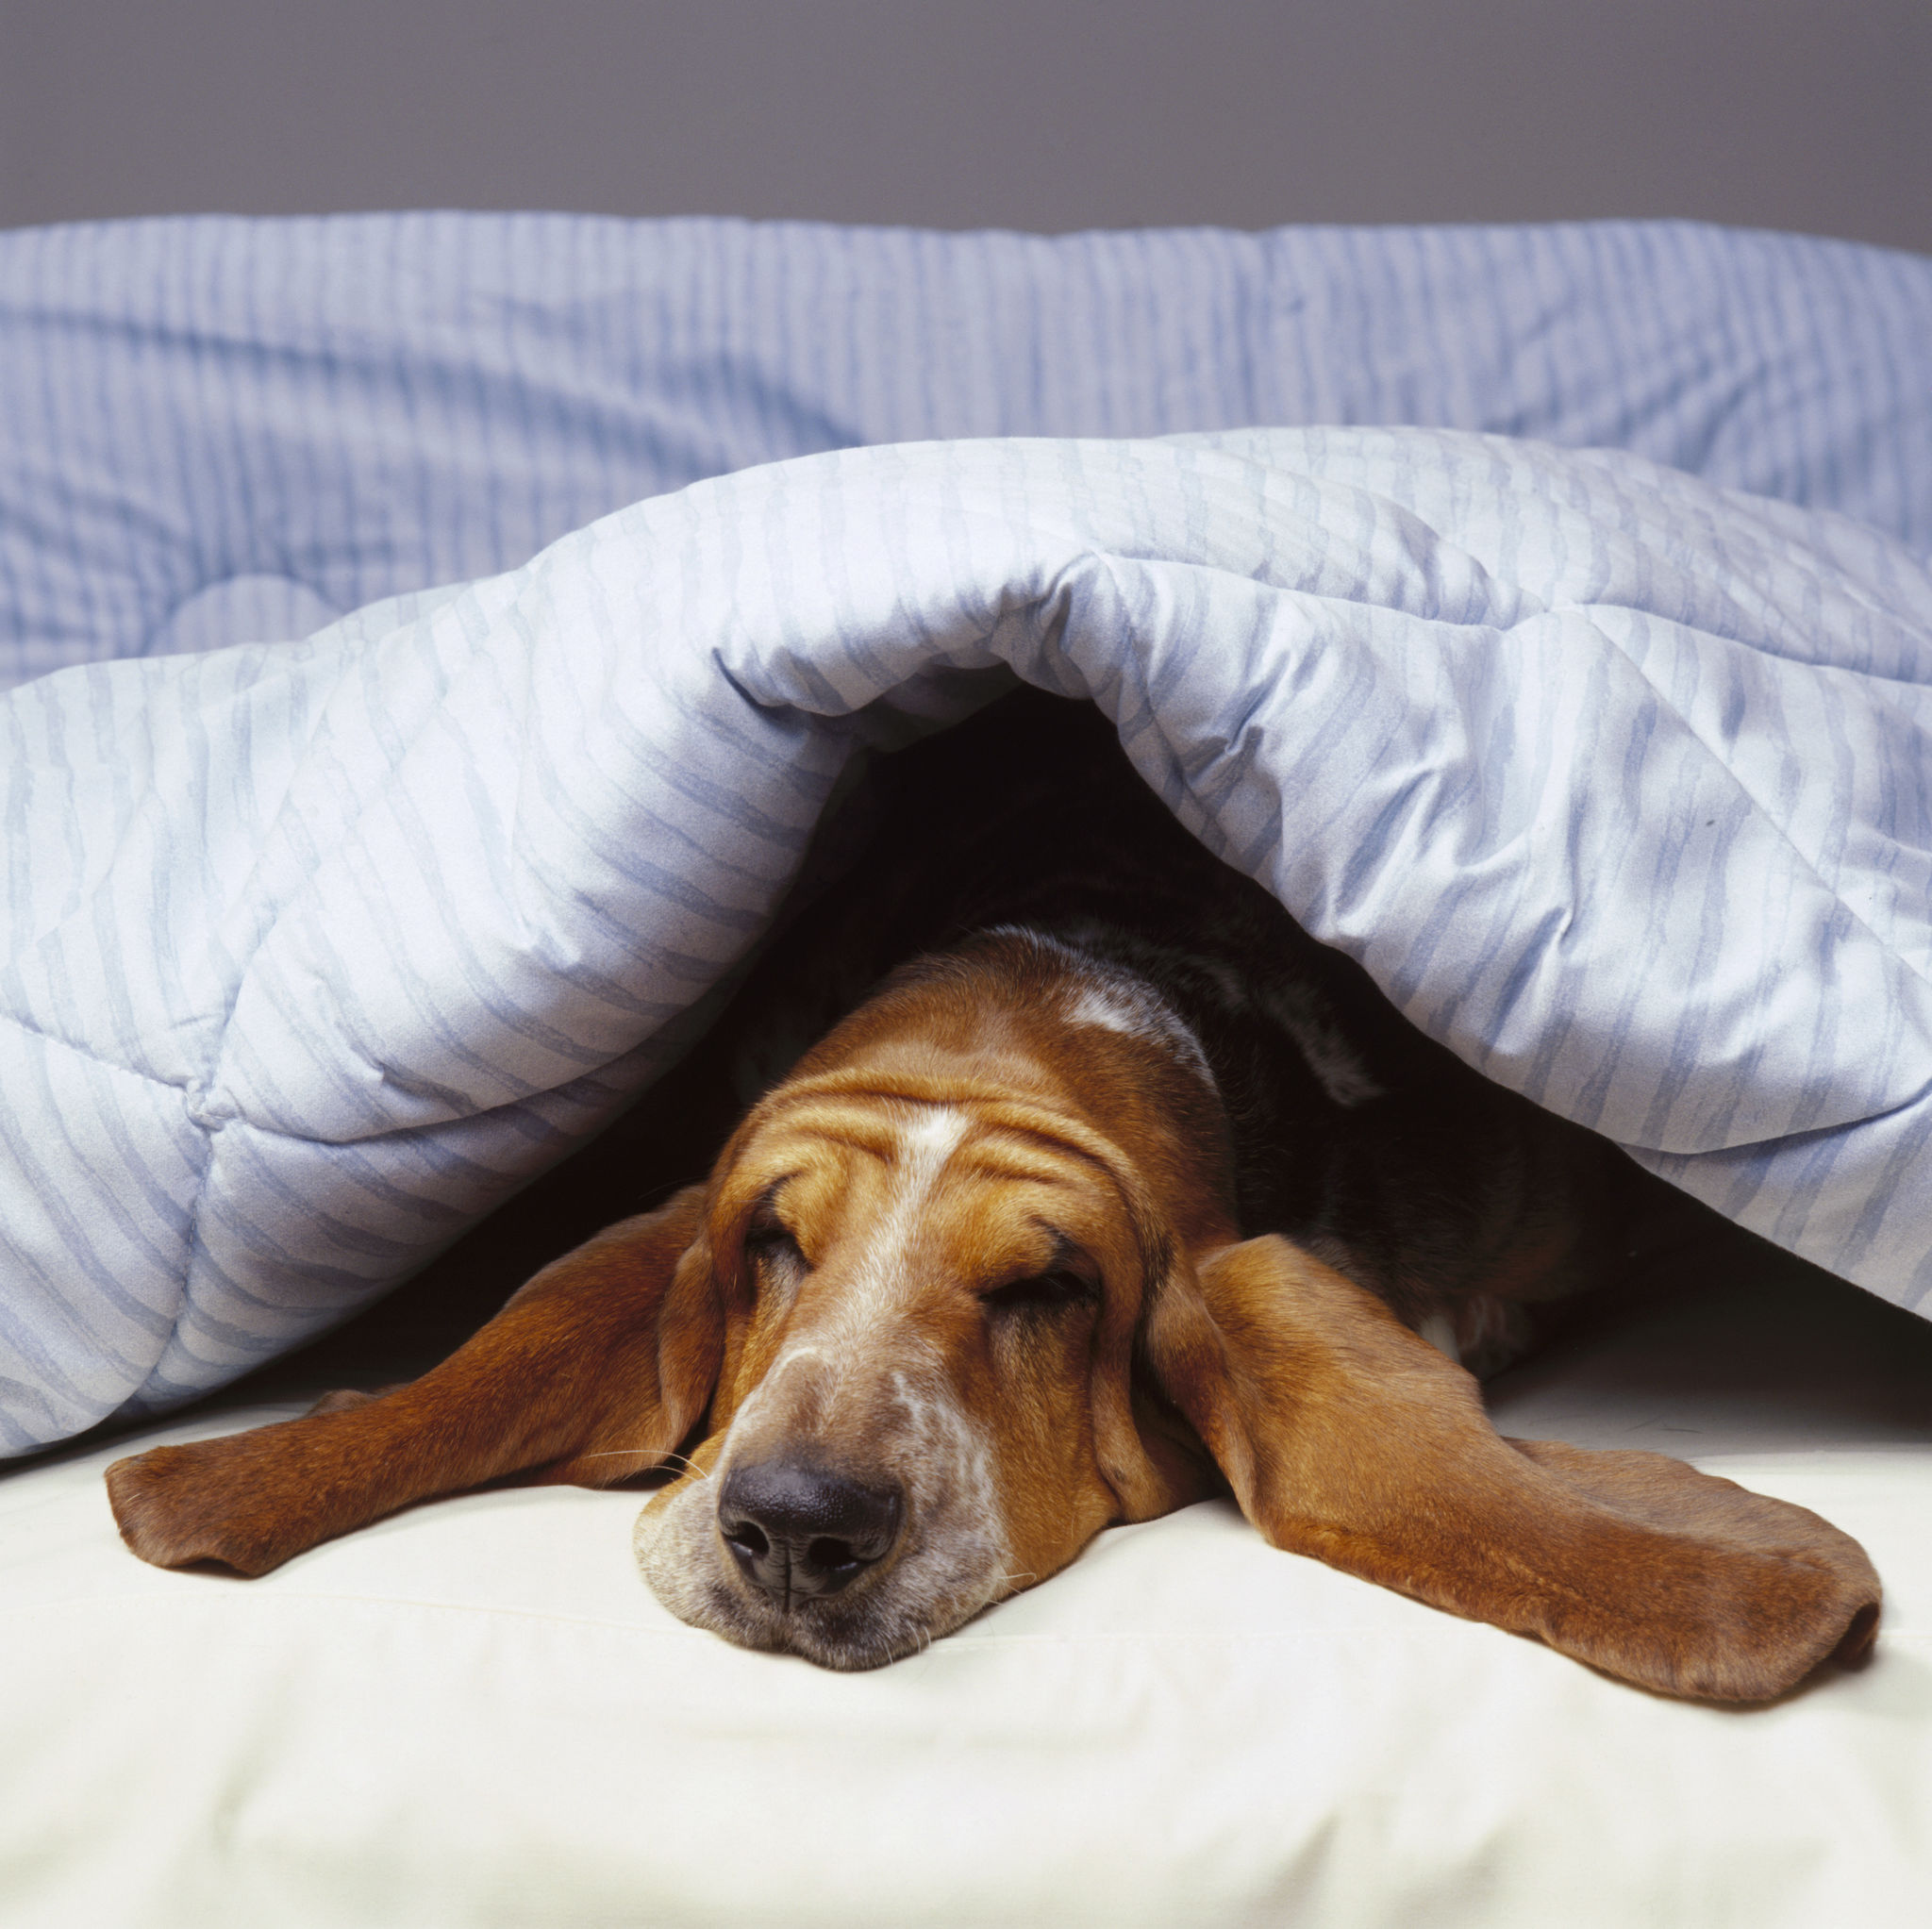 Basset hound in bed under blue blanket